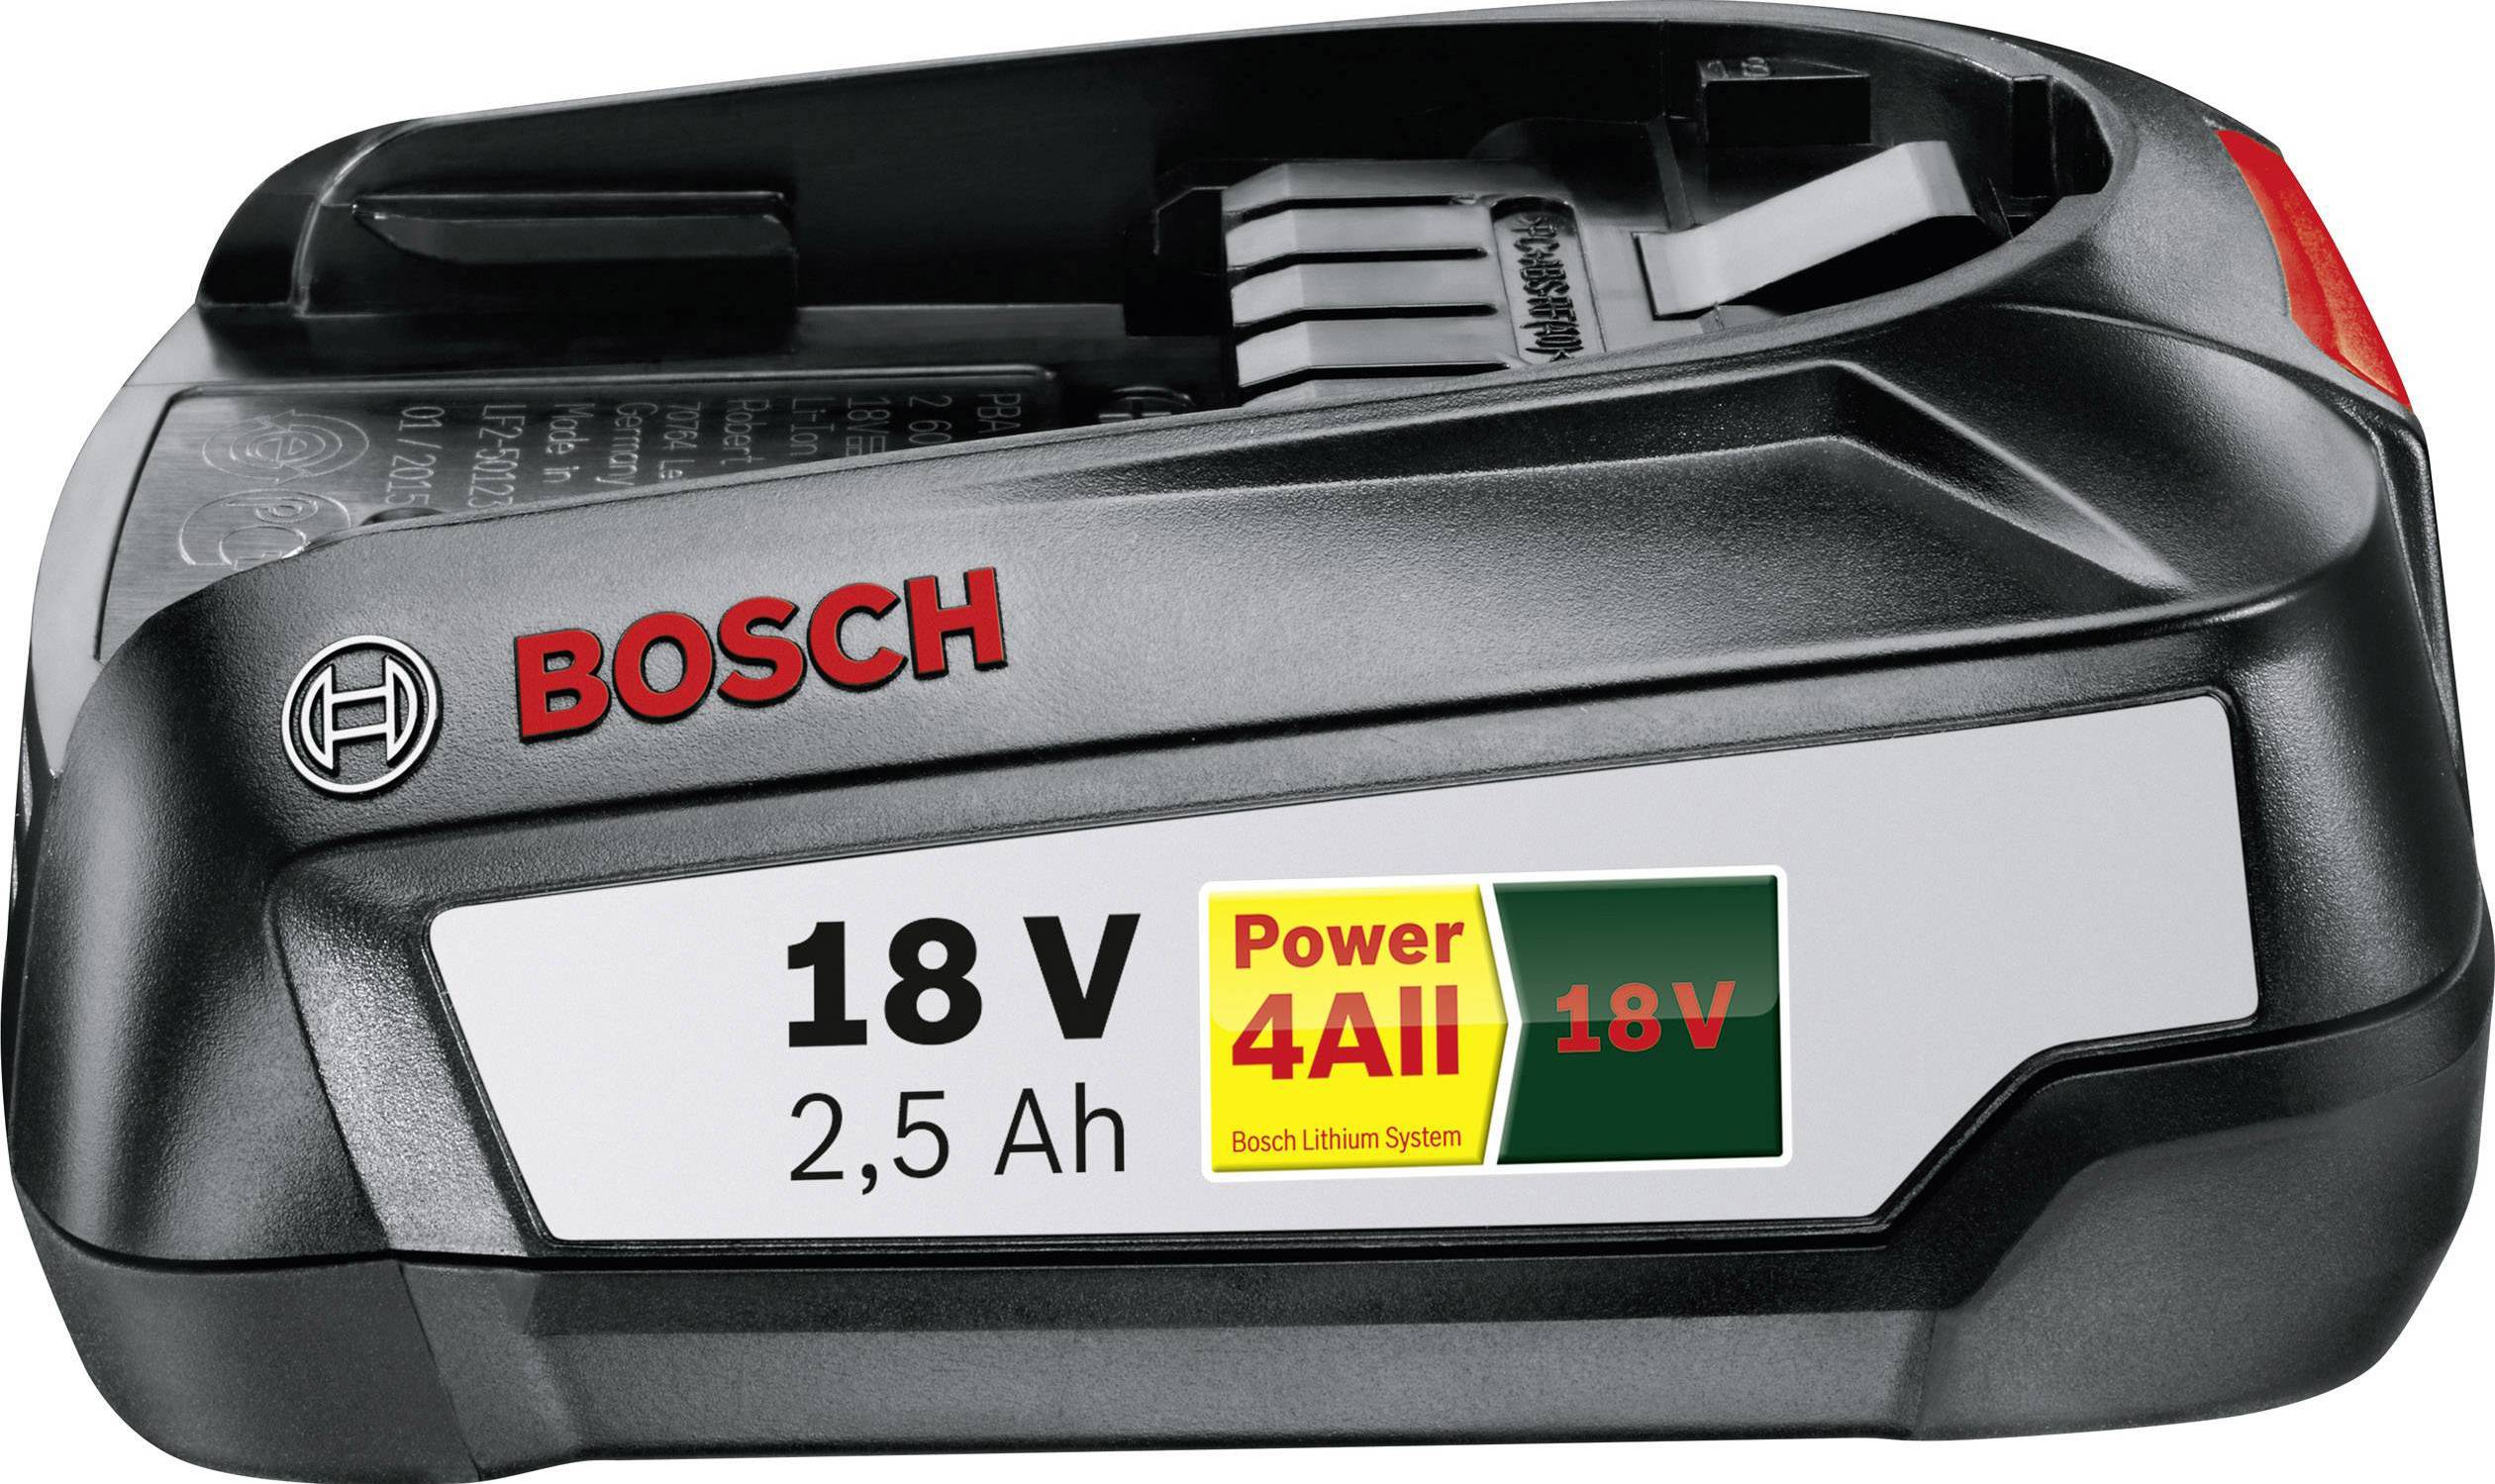 Bosch Home And Garden Pba 1600a005b0 Tool Battery 18 V 2 5 Ah Li